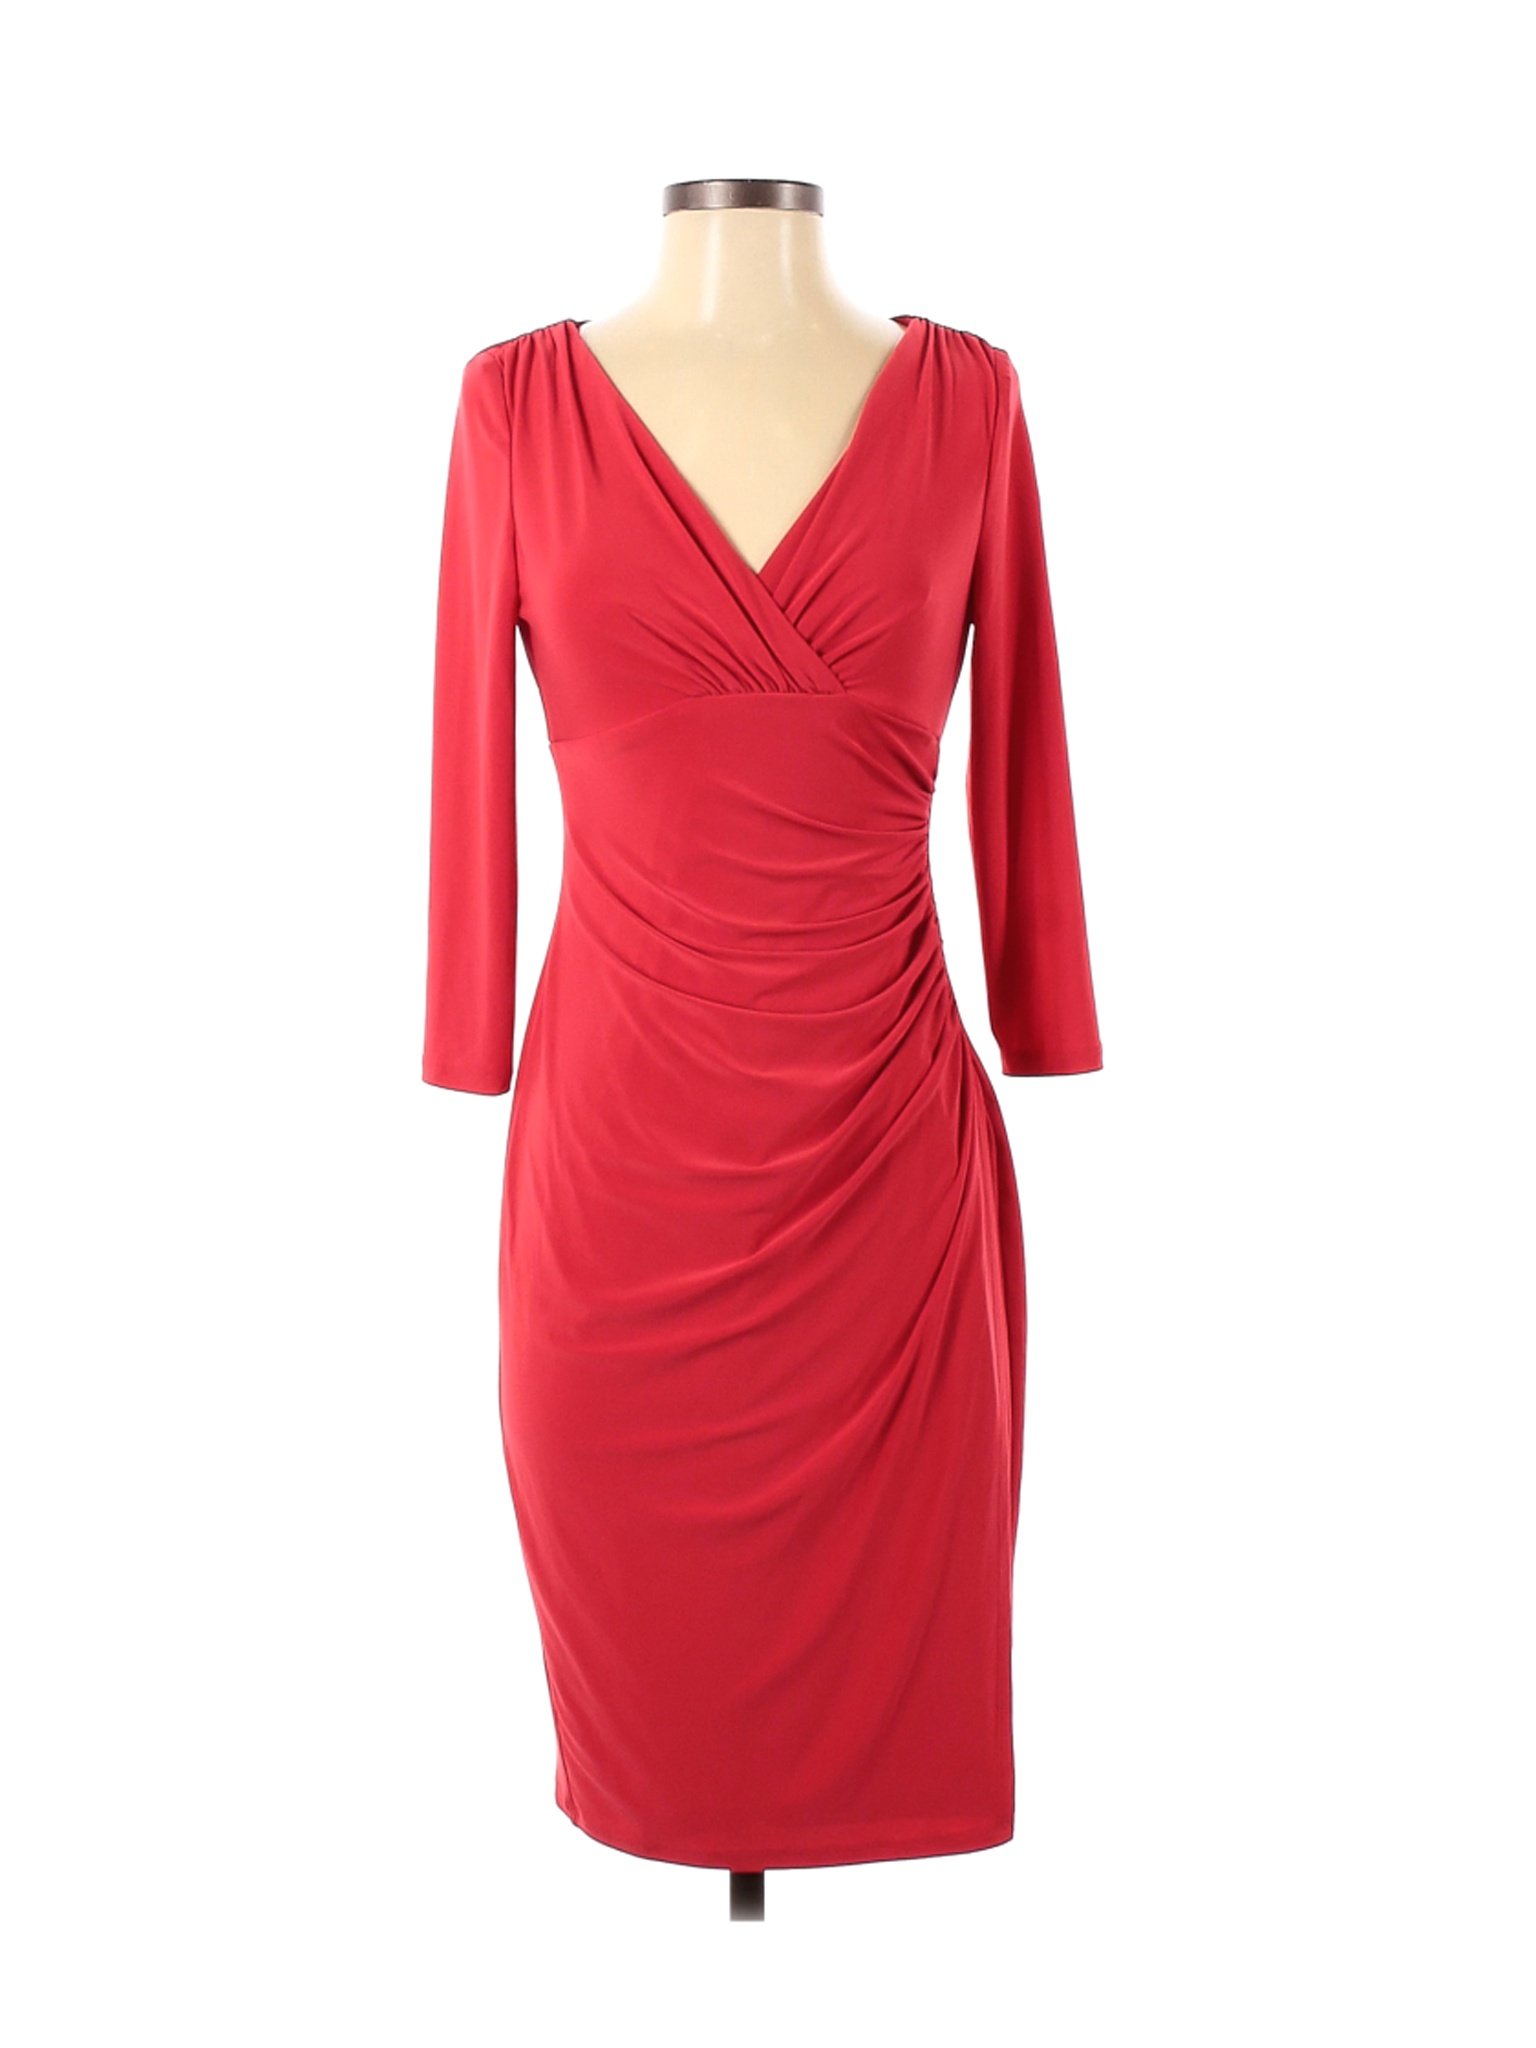 Lauren by Ralph Lauren Women Red Casual Dress 4 Petites | eBay